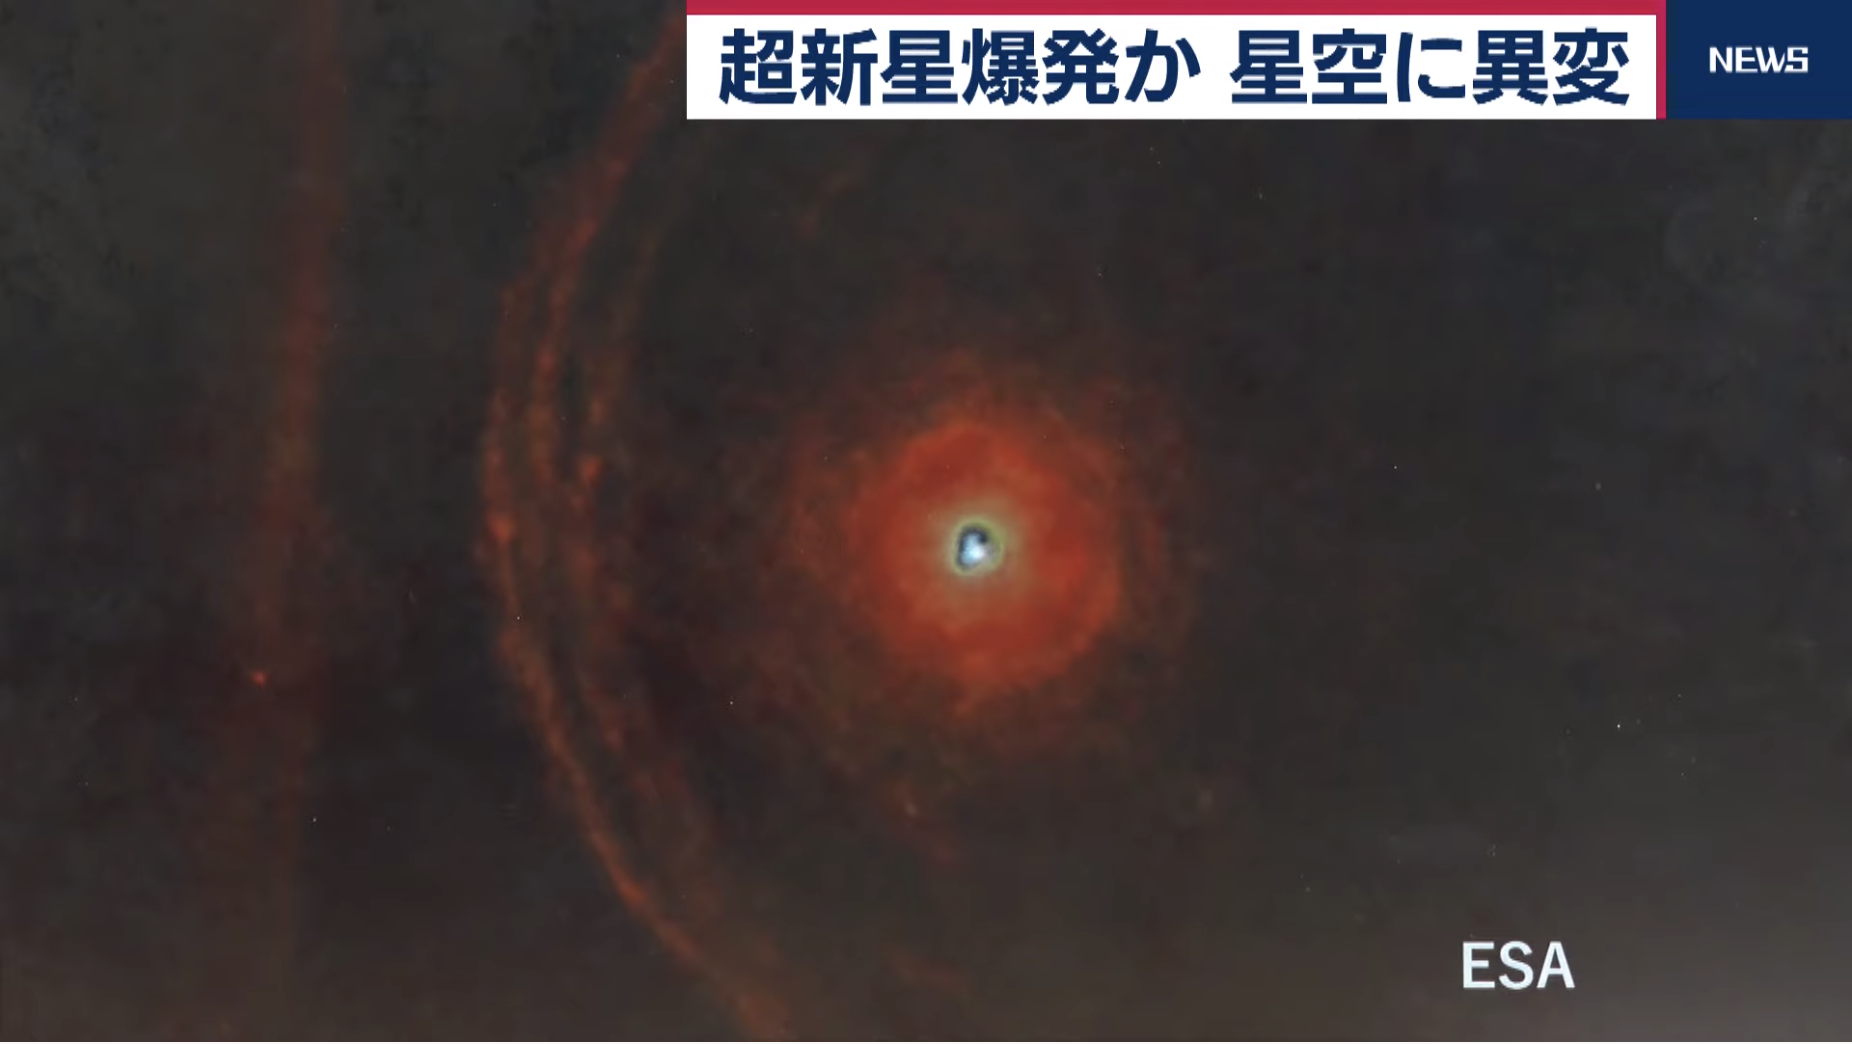 星空に異変 ベテルギウスが超新星爆発か 経済報道テレビ Khtv